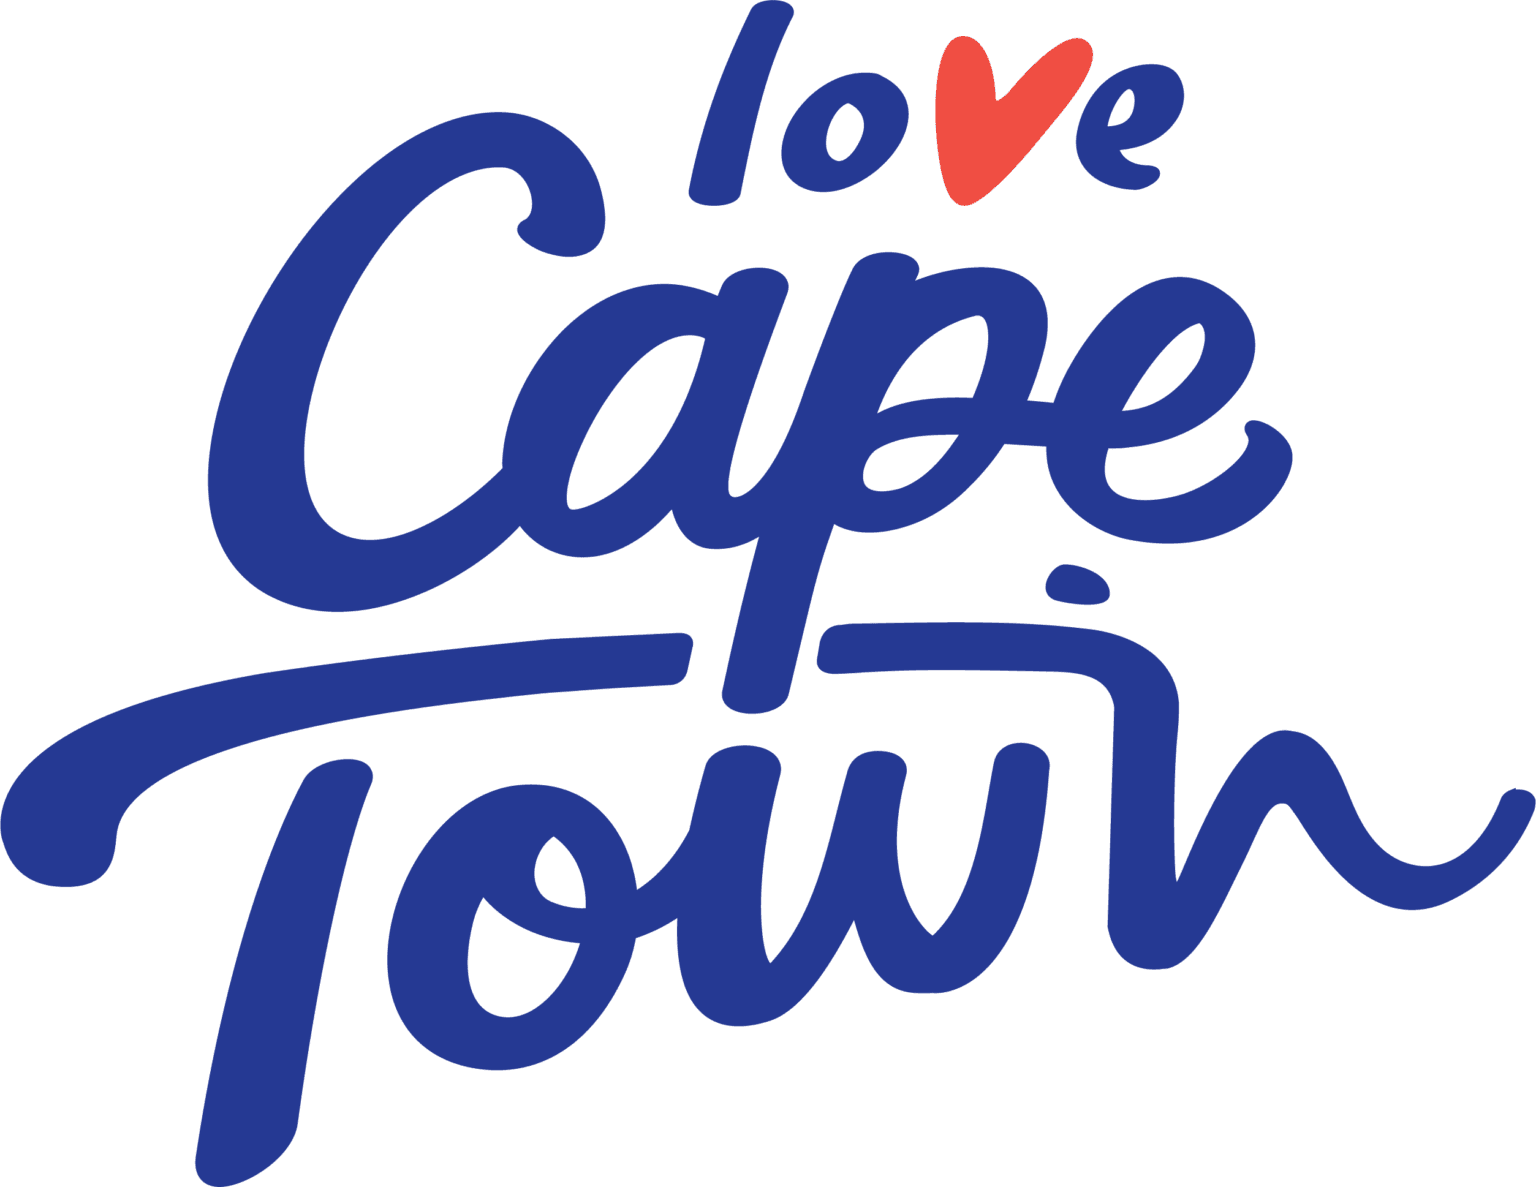 Dieser Beitrag entstand mit der freundlichen Unterstützung von Cape Town Travel.